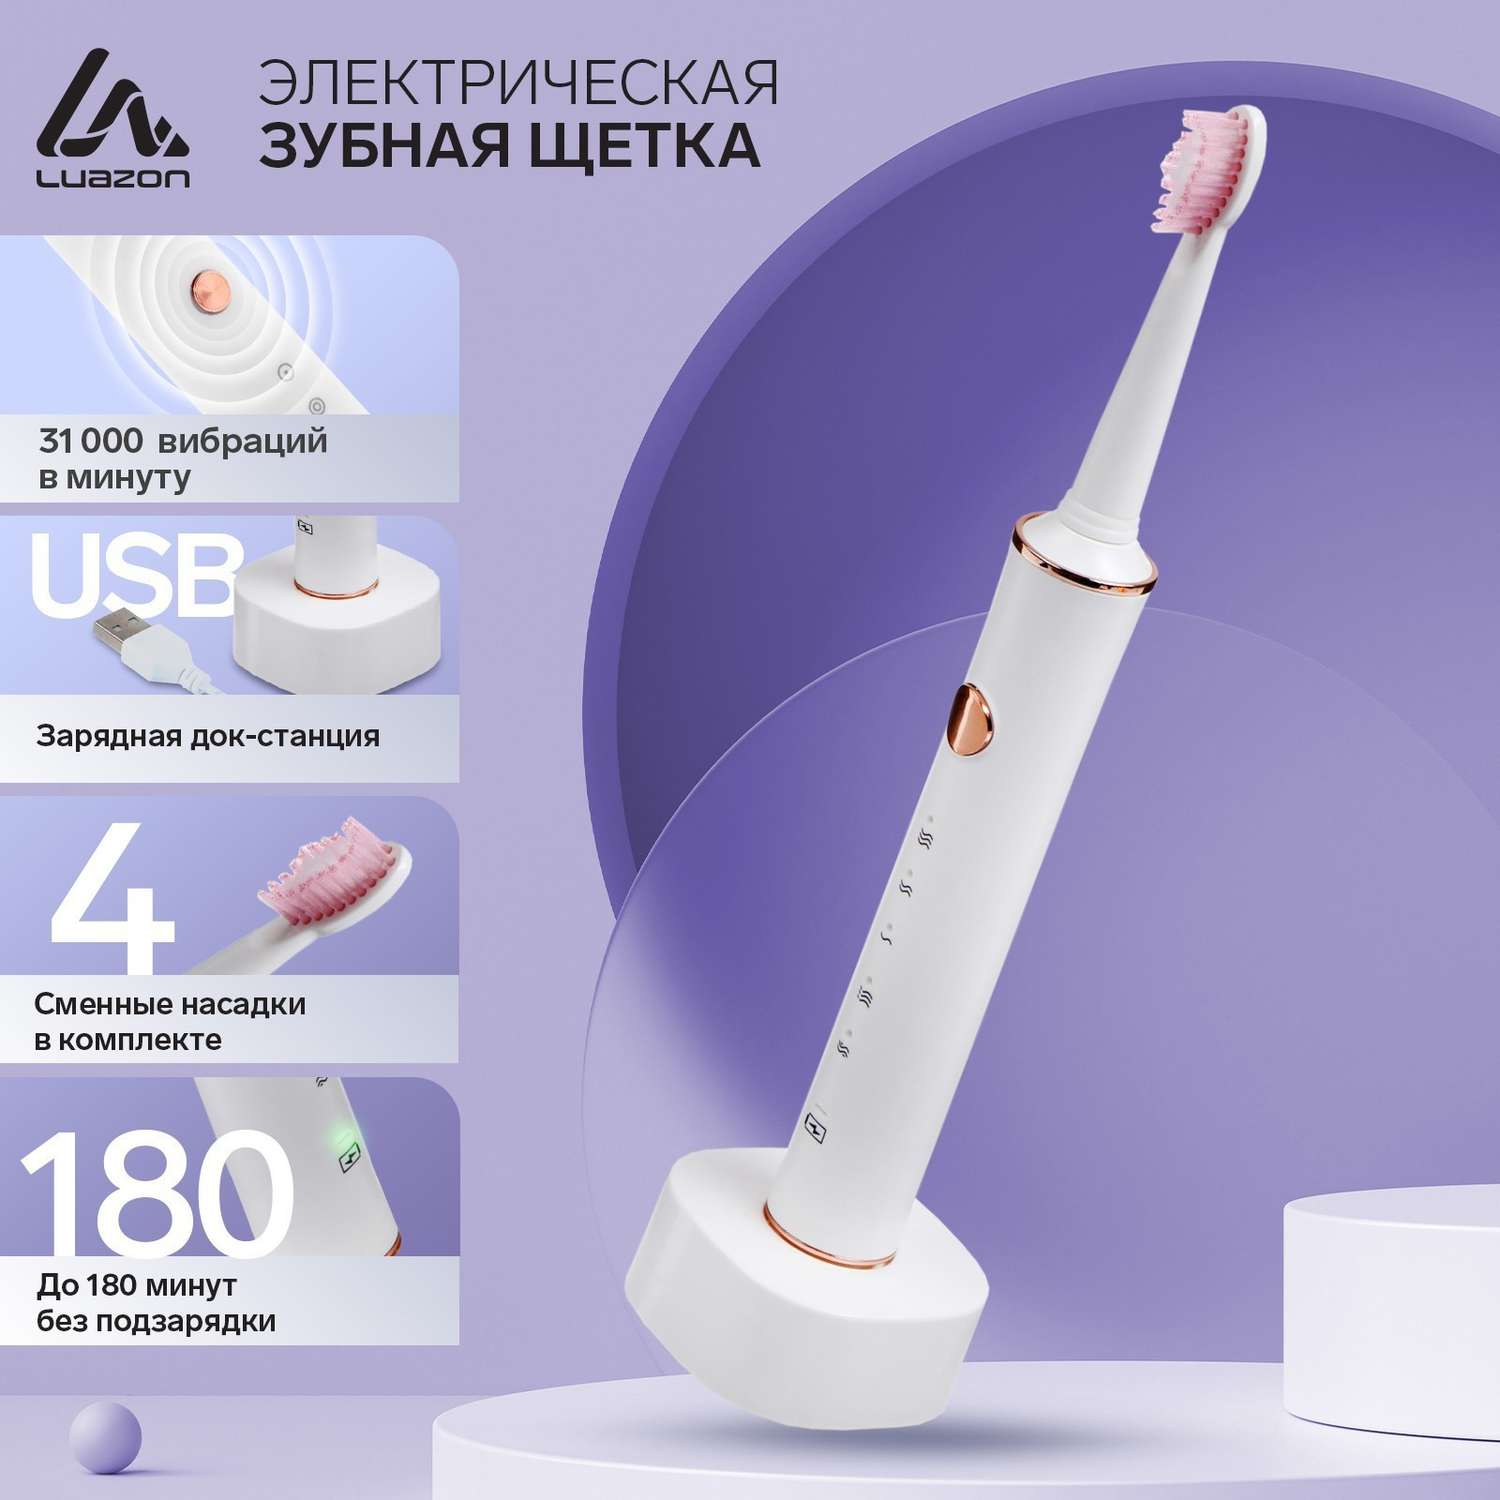 Электрическая зубная щётка Luazon Home LP002 вибрационная 31000 дв/мин 4 насадки АКБ - фото 2